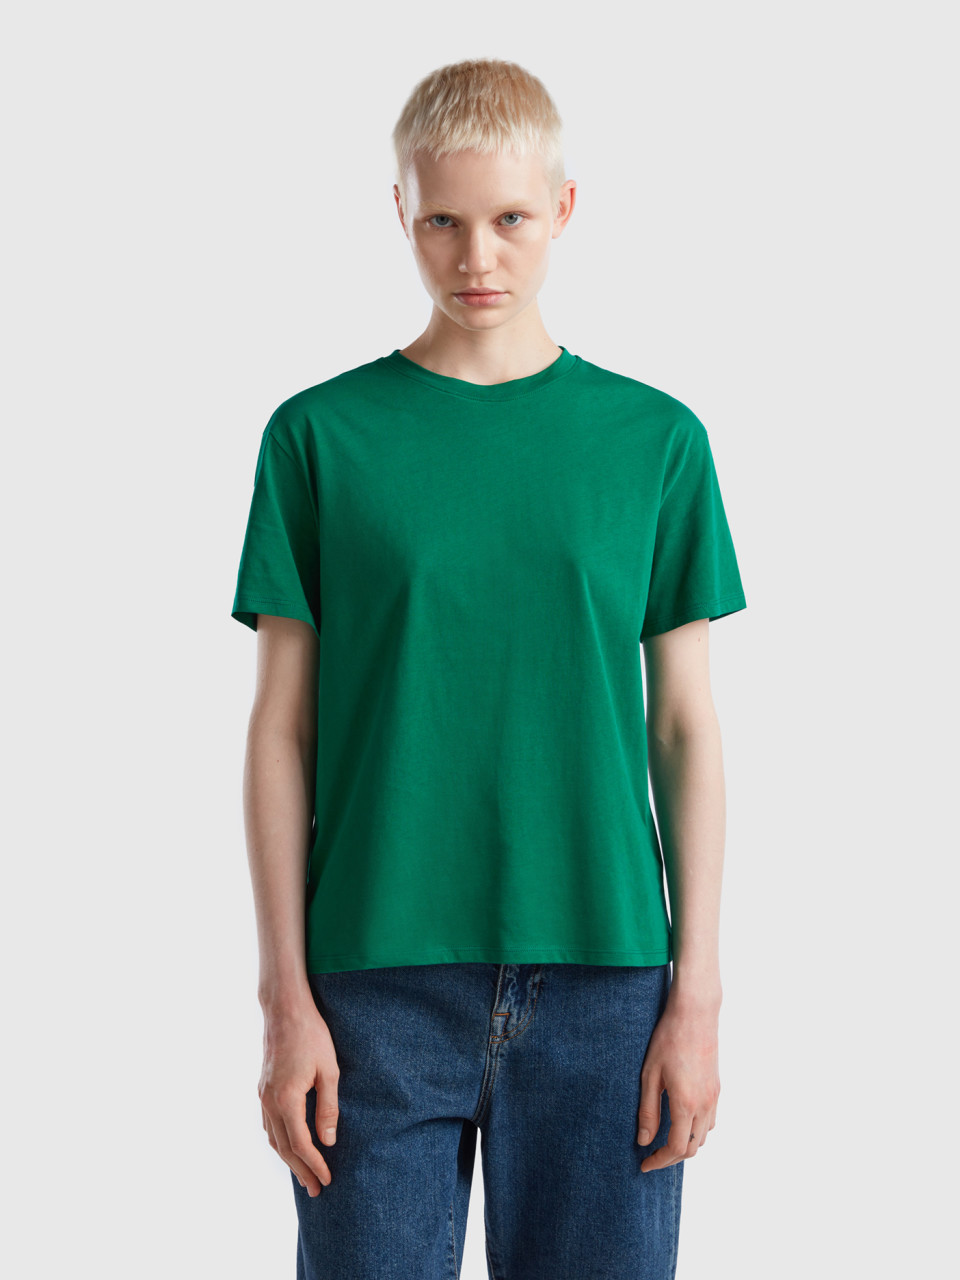 Benetton, Short Sleeve 100% Cotton T-shirt, Green, Women